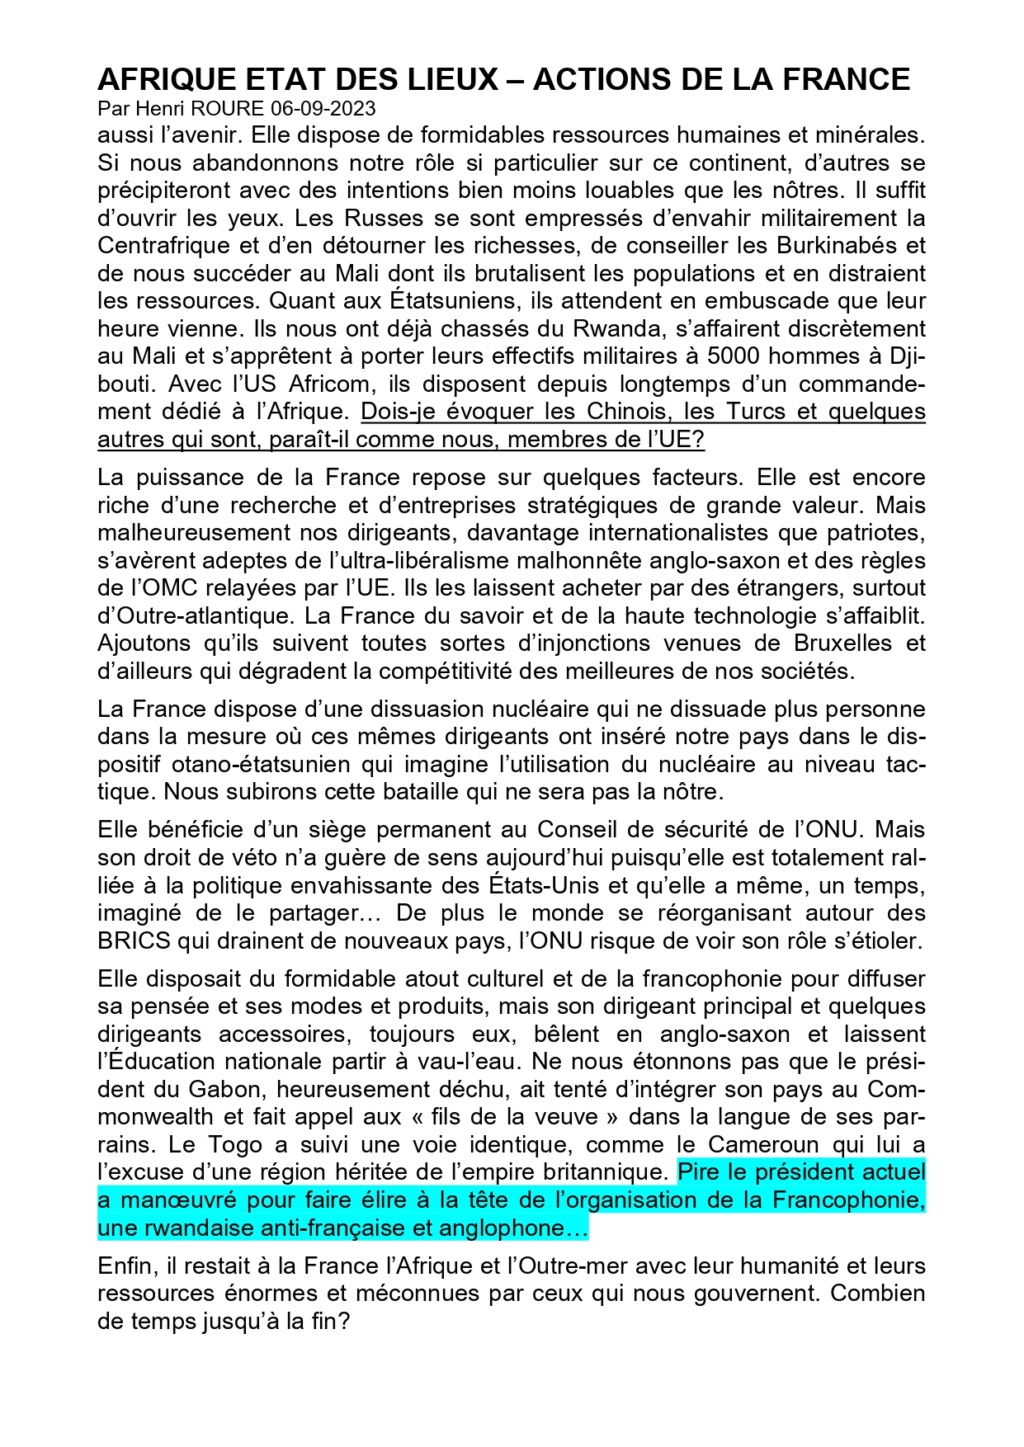 AFRIGUE ETAT DES LIEUX - ACTION DE LA FRANCE par Henri ROURE 06-09-2023 "Quand les Français serviront-ils à nouveau la France? Afriqu12